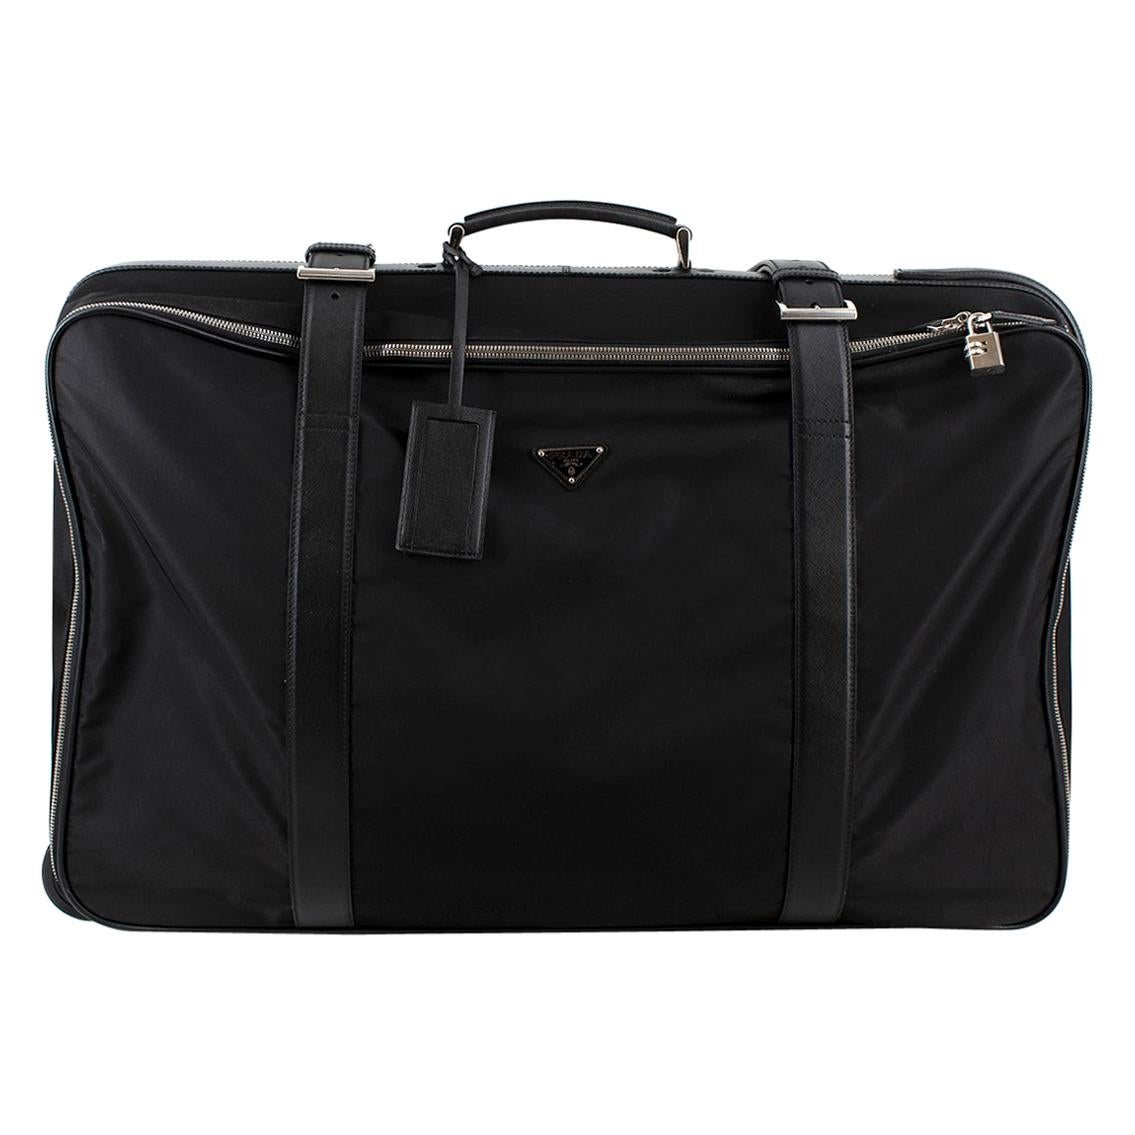 Prada Black Nylon & Saffiano Leather Semi-Rigid Suitcase For Sale